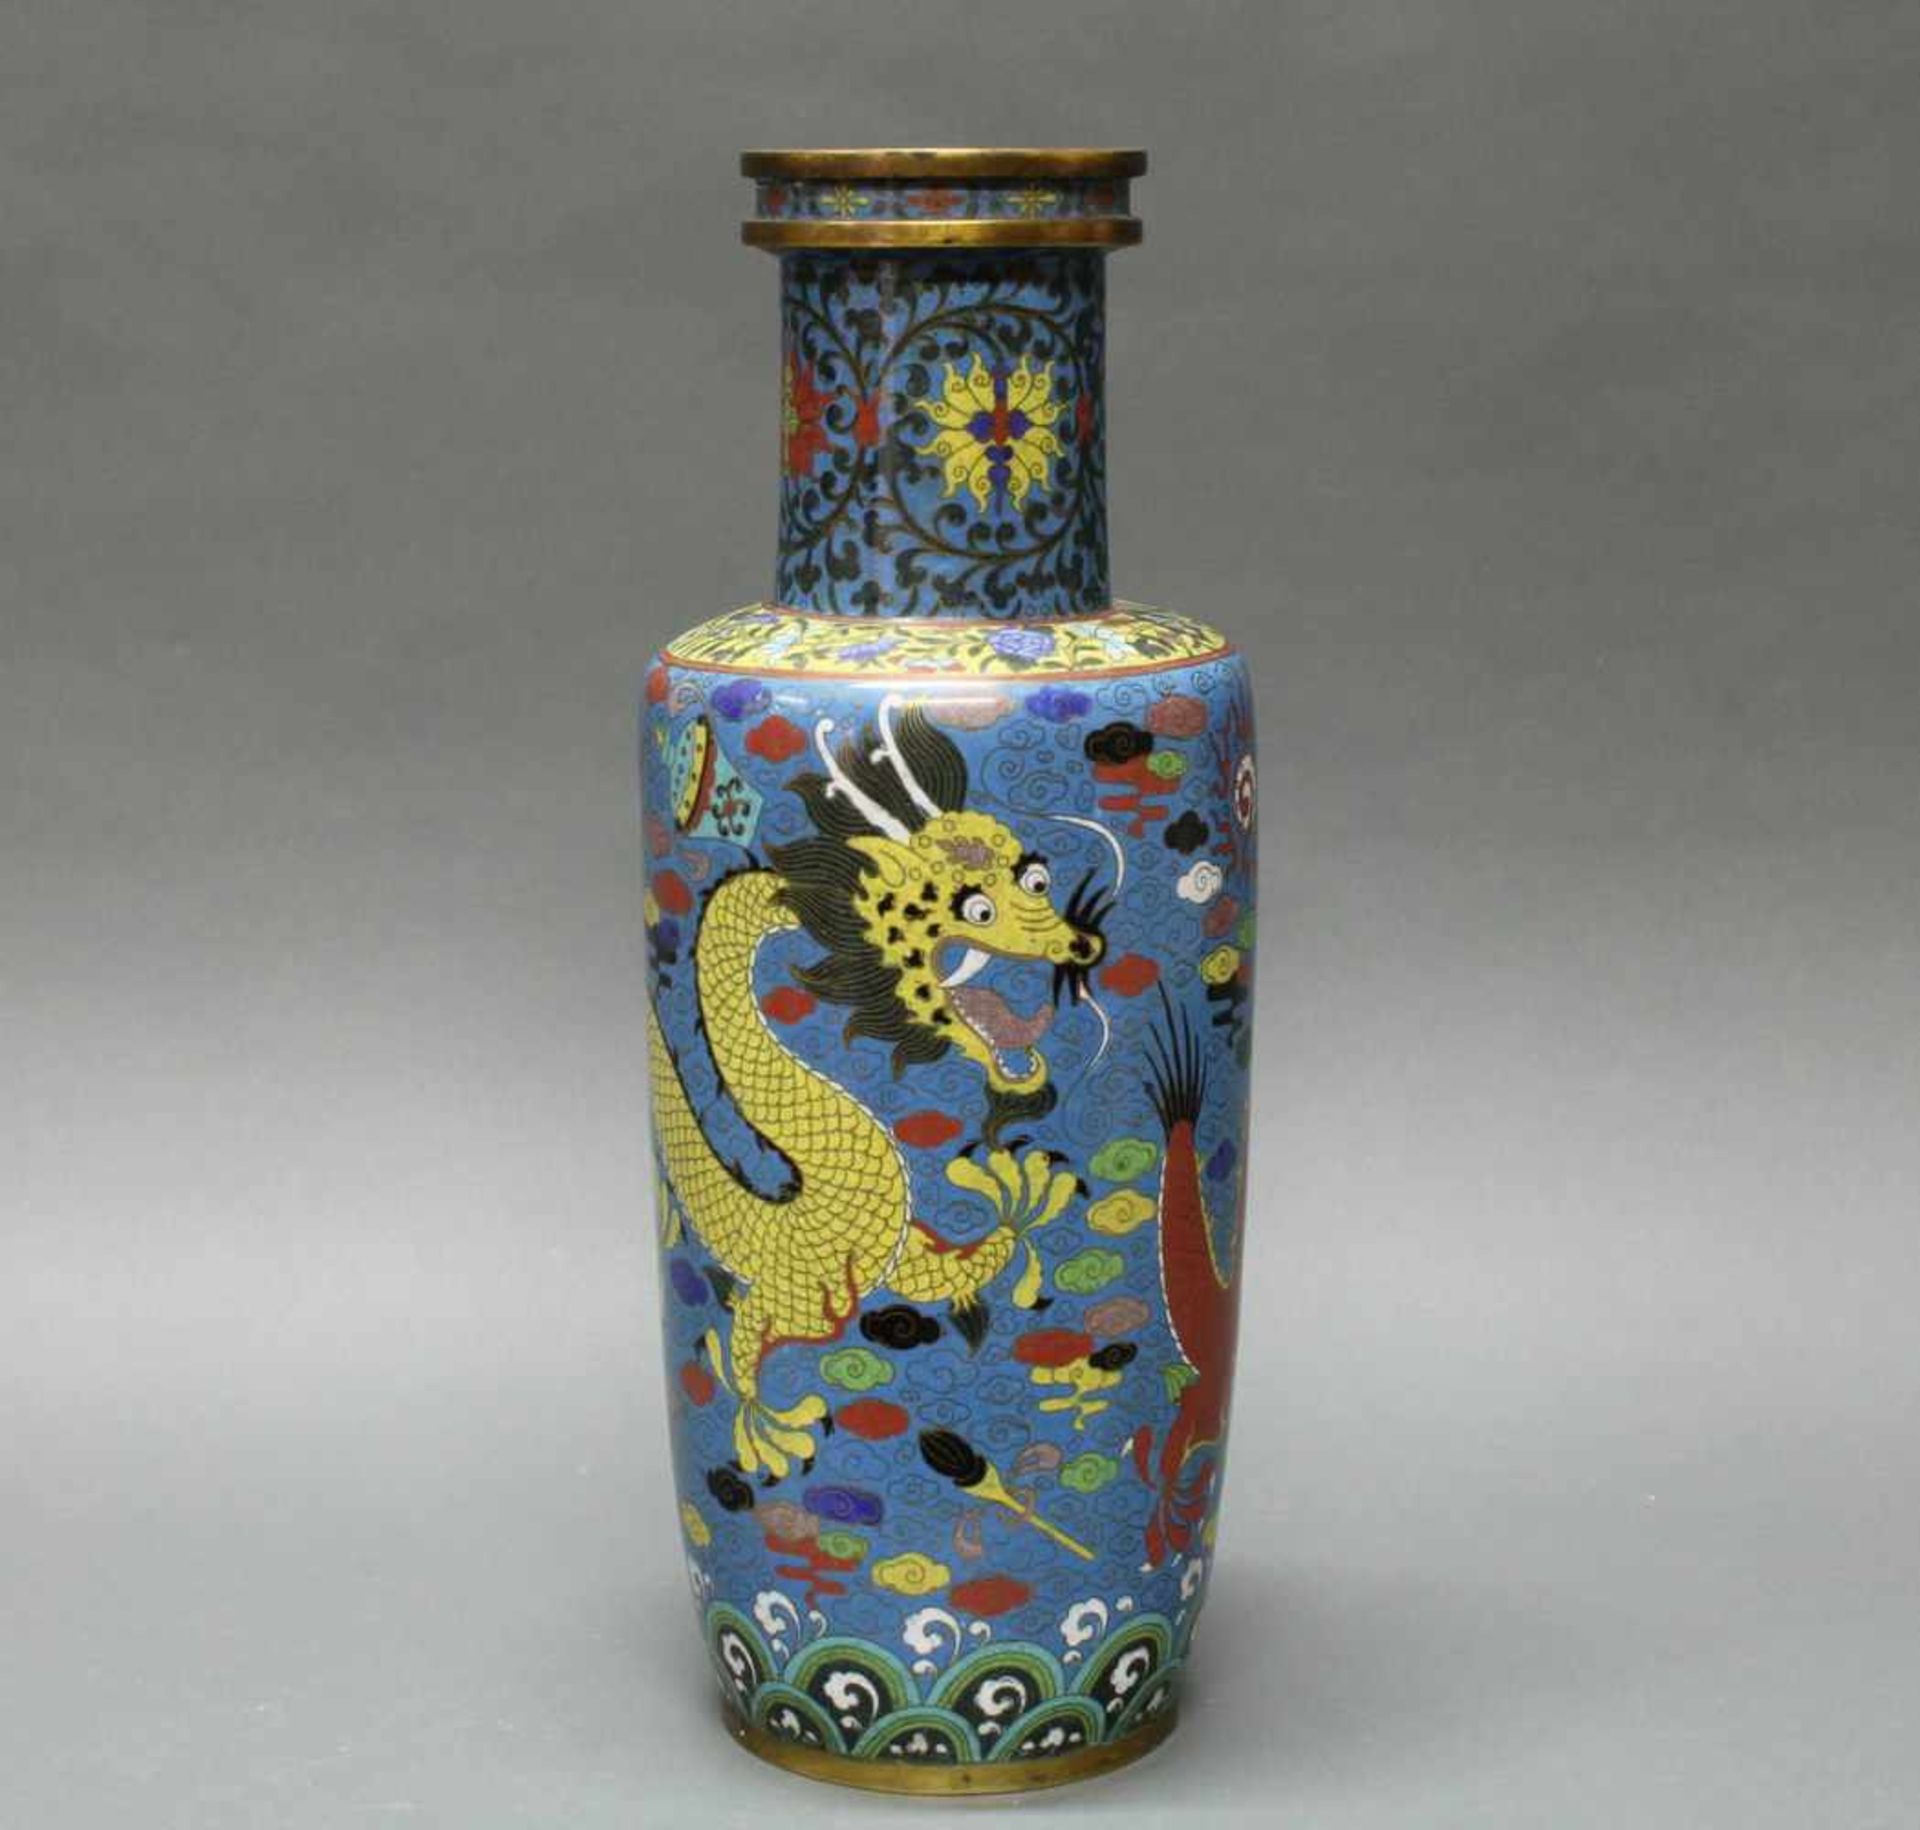 Vase, China, um 1900, Cloisonné, um den zylindrischen Korpus ein gelber und ein roter Drache